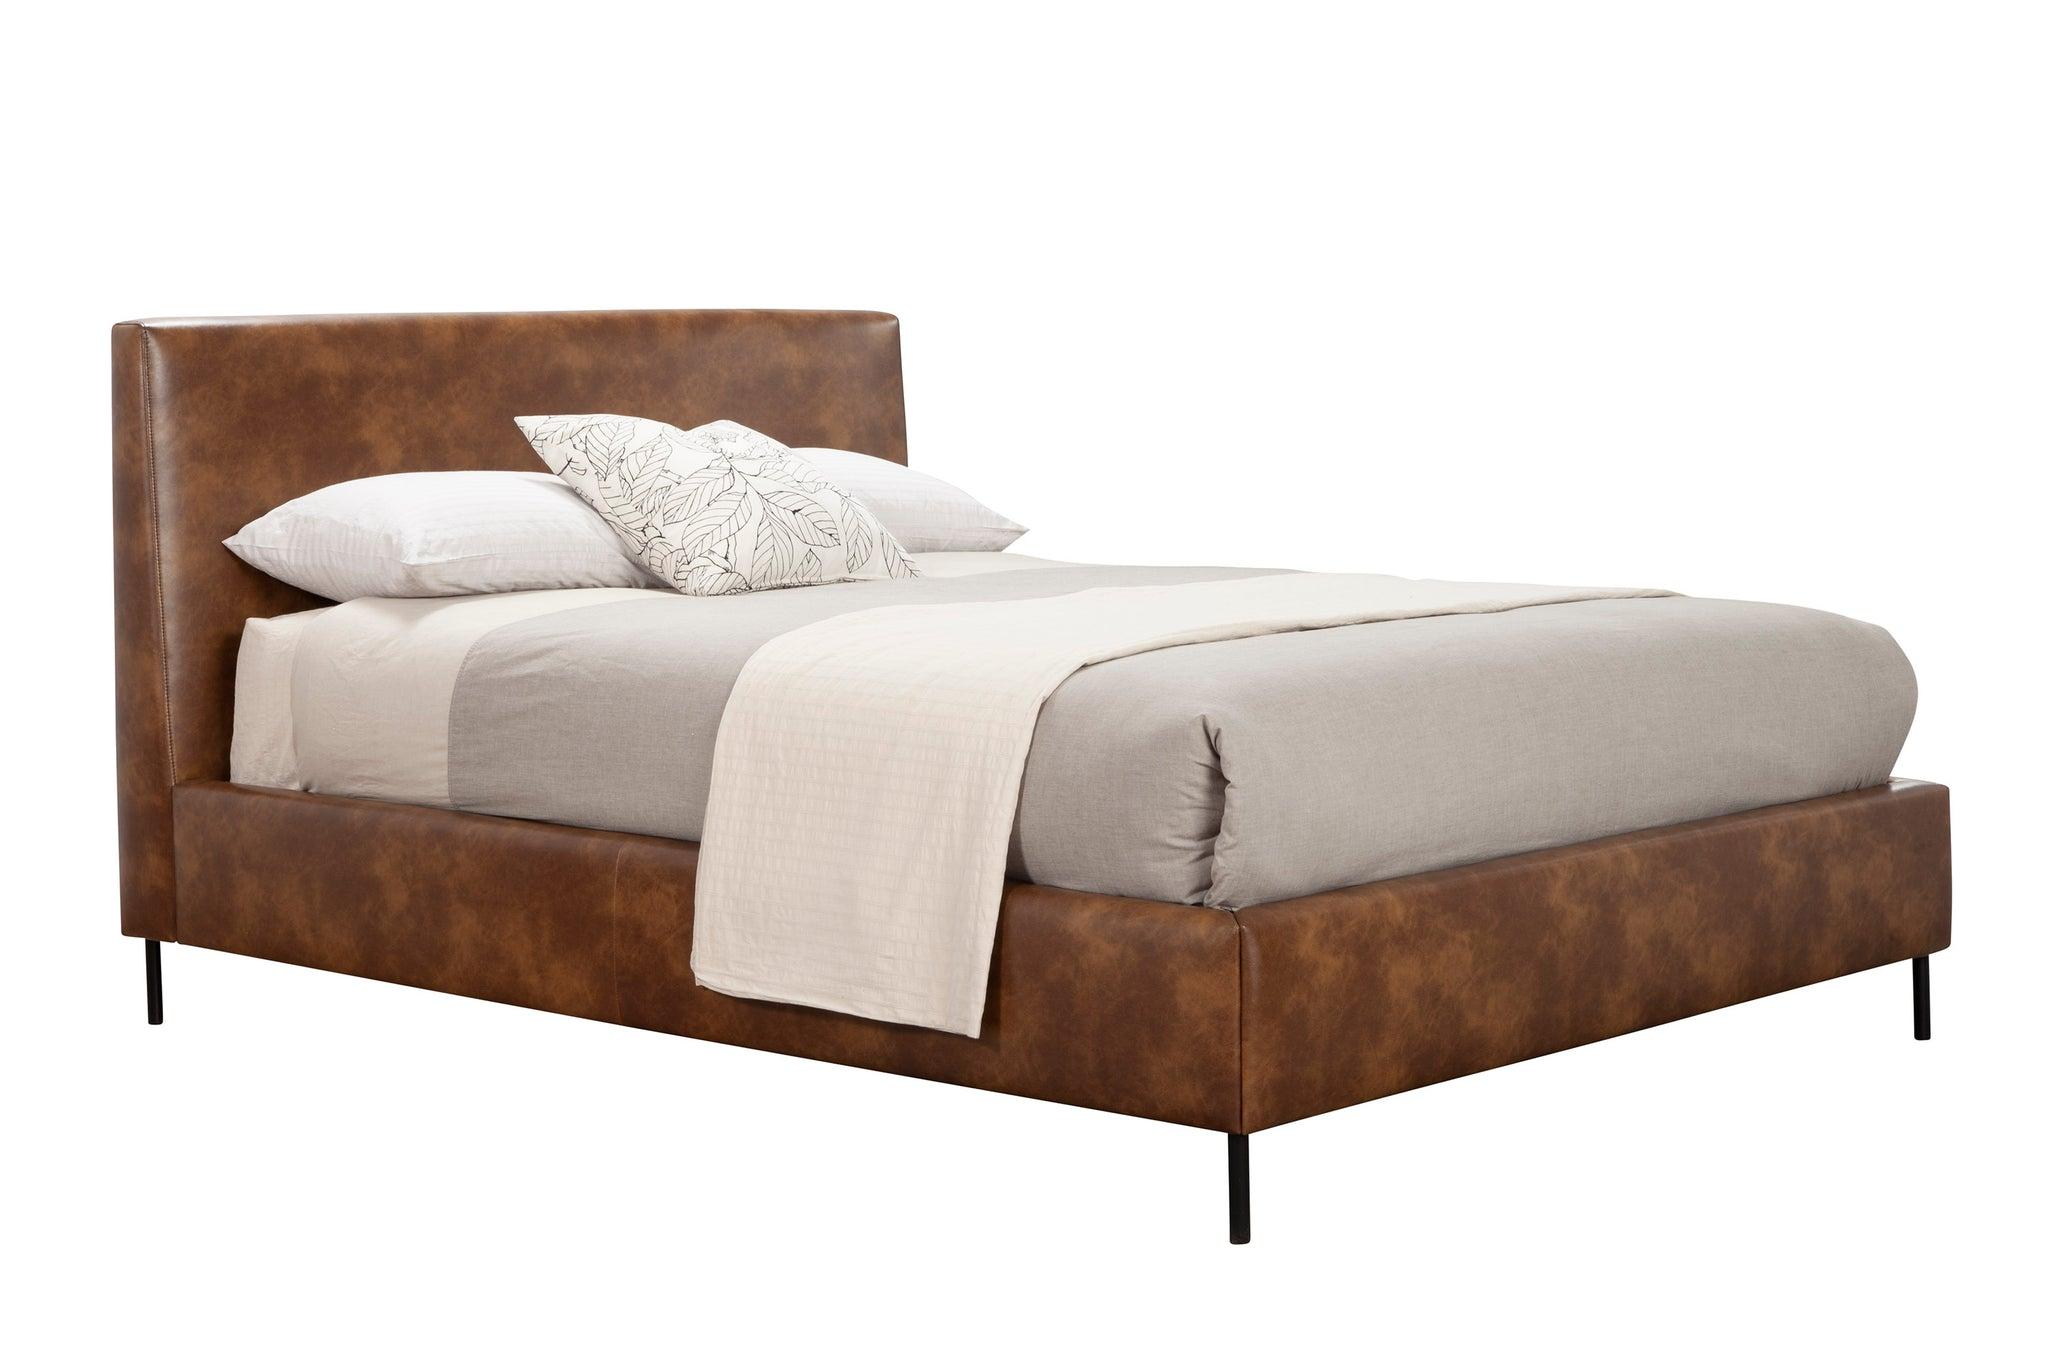 Modern, Rustic Platform Bed SOPHIA 6902CK-BRN in Brown Faux Leather